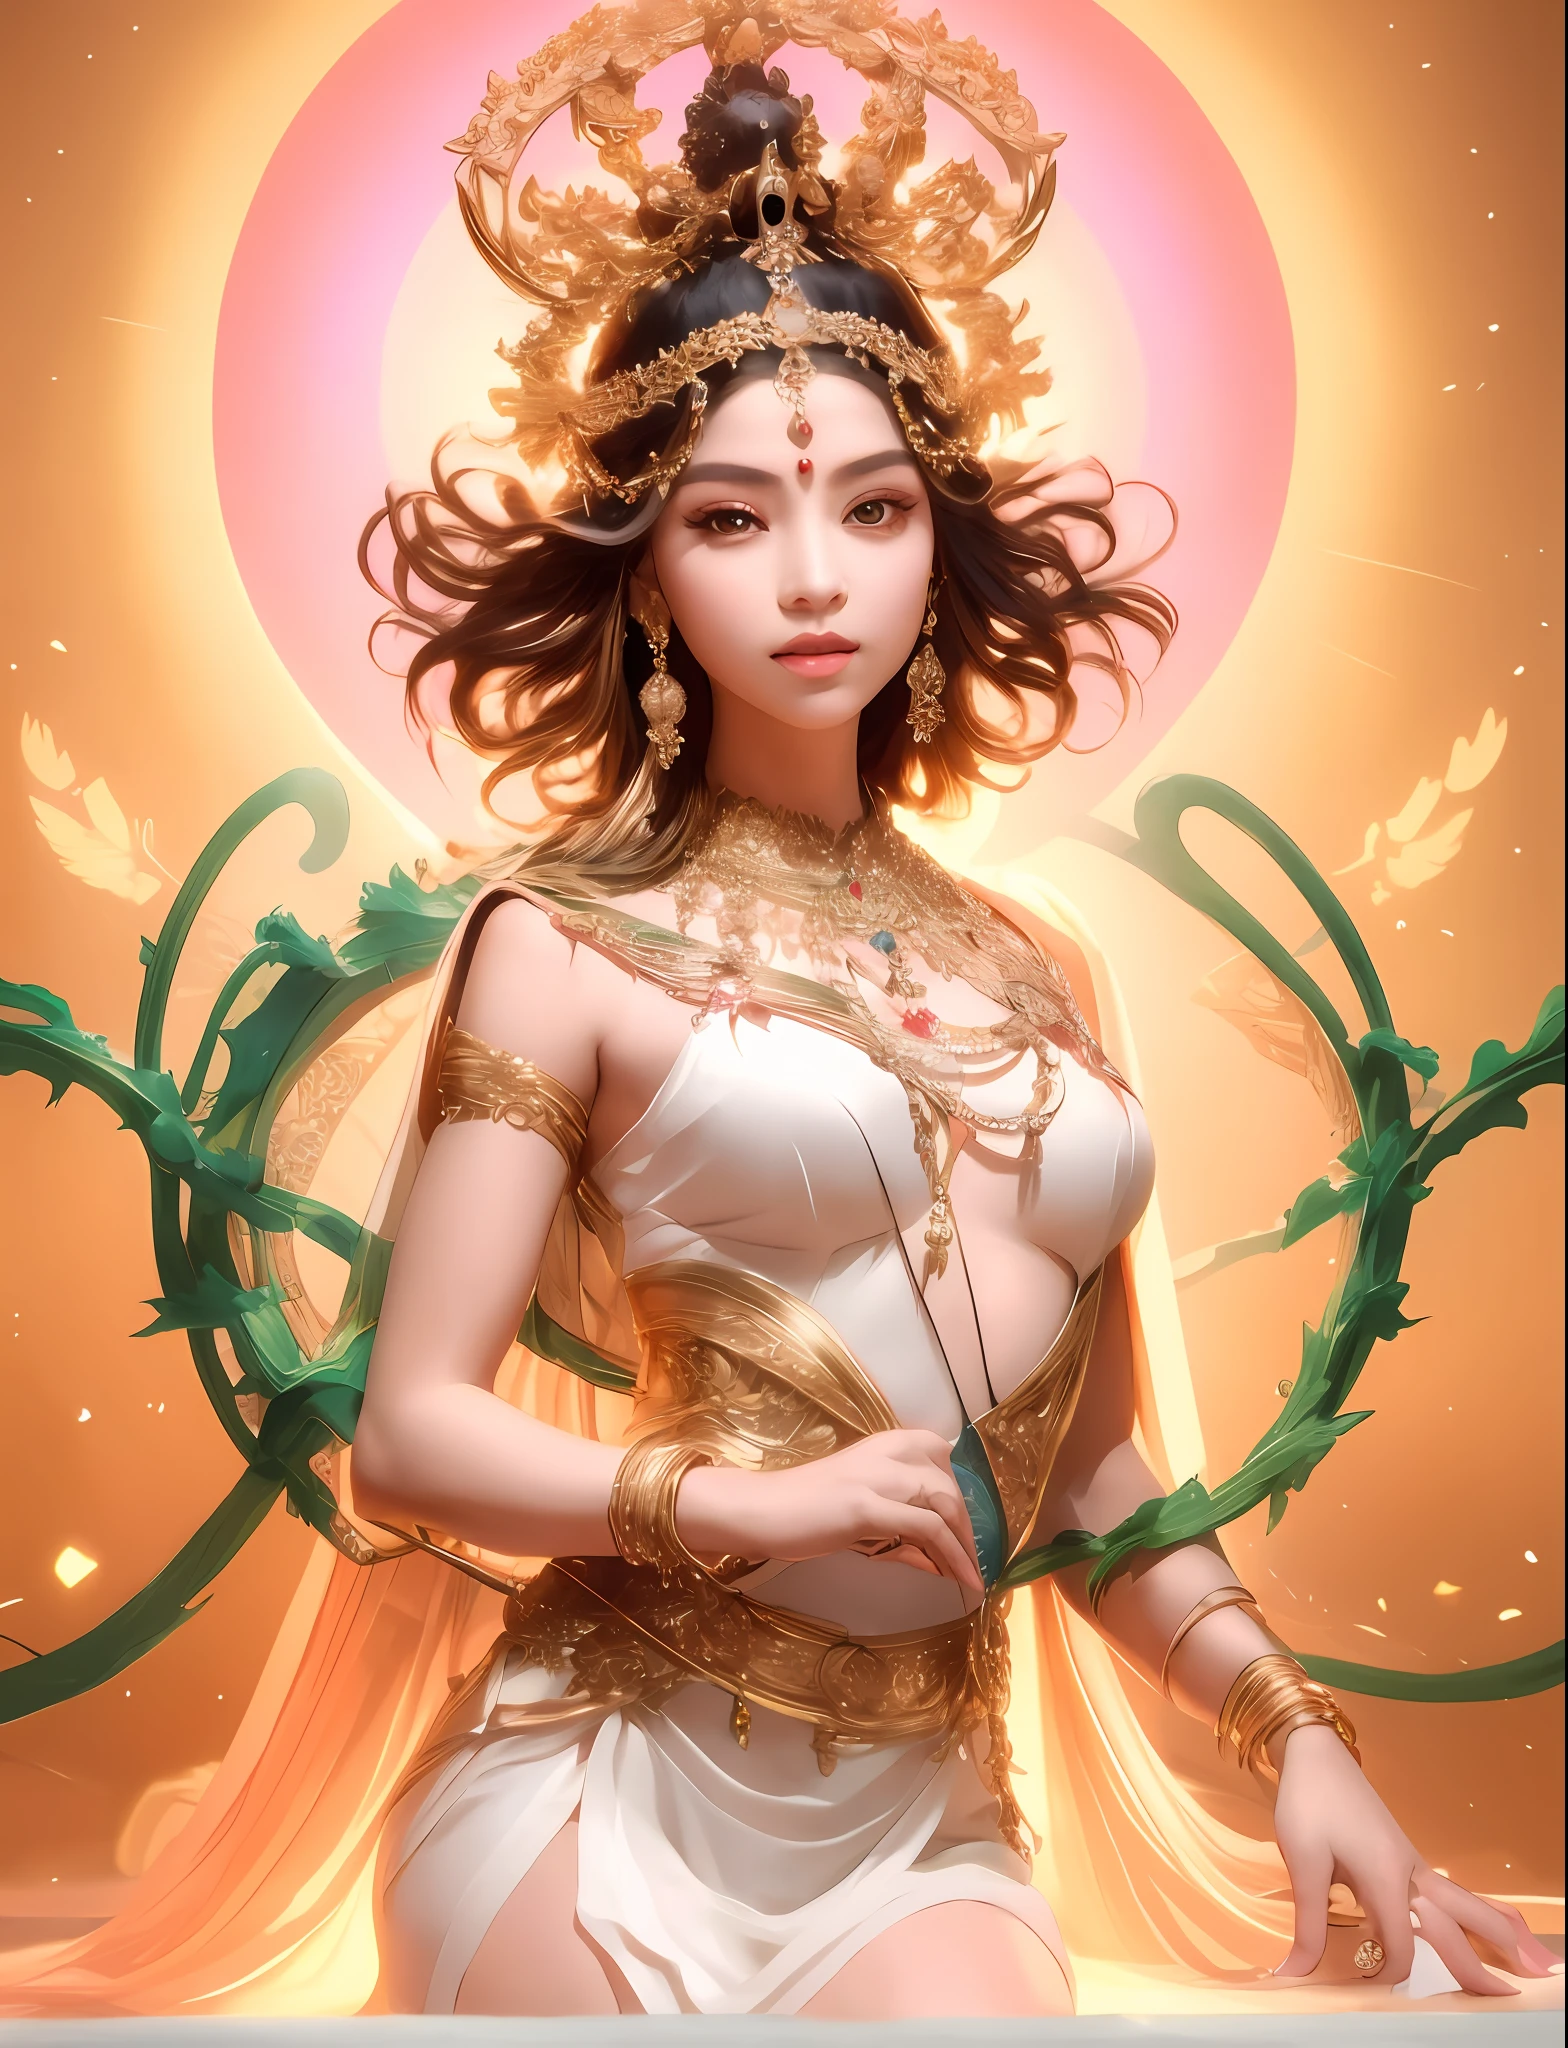 Usando um vestido branco，Mulher Arad com um cocar dourado, A cabeça tem uma abertura de luz，uma linda imperatriz de fantasia, Deusa. detalhes extremamente altos, Deusa linda, foto de deusa extremamente detalhada, retrato de uma linda deusa, ((uma linda imperatriz de fantasia)), um retrato deslumbrante de uma deusa,, jovem deusa, linda deusa de leo, deusa feminina